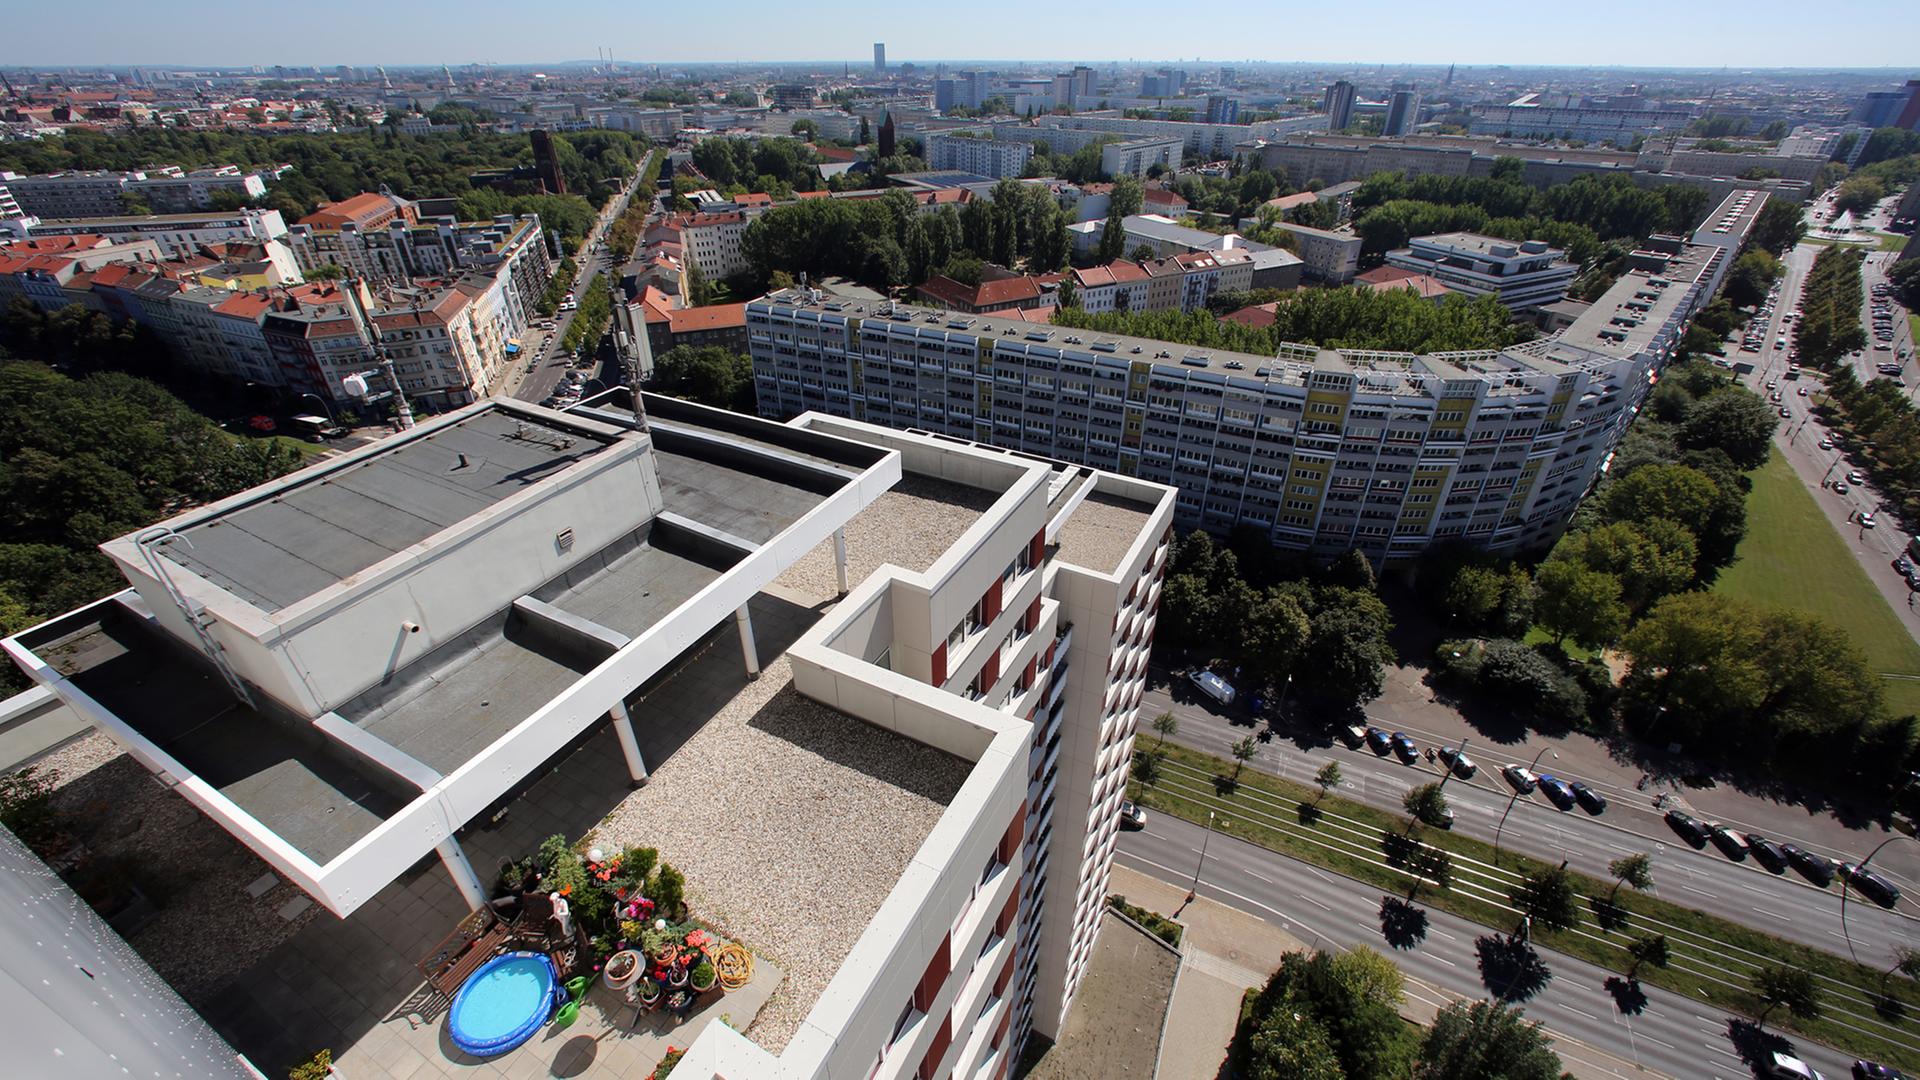 Blick von einem Hochhaus über die Dächer von Berlin